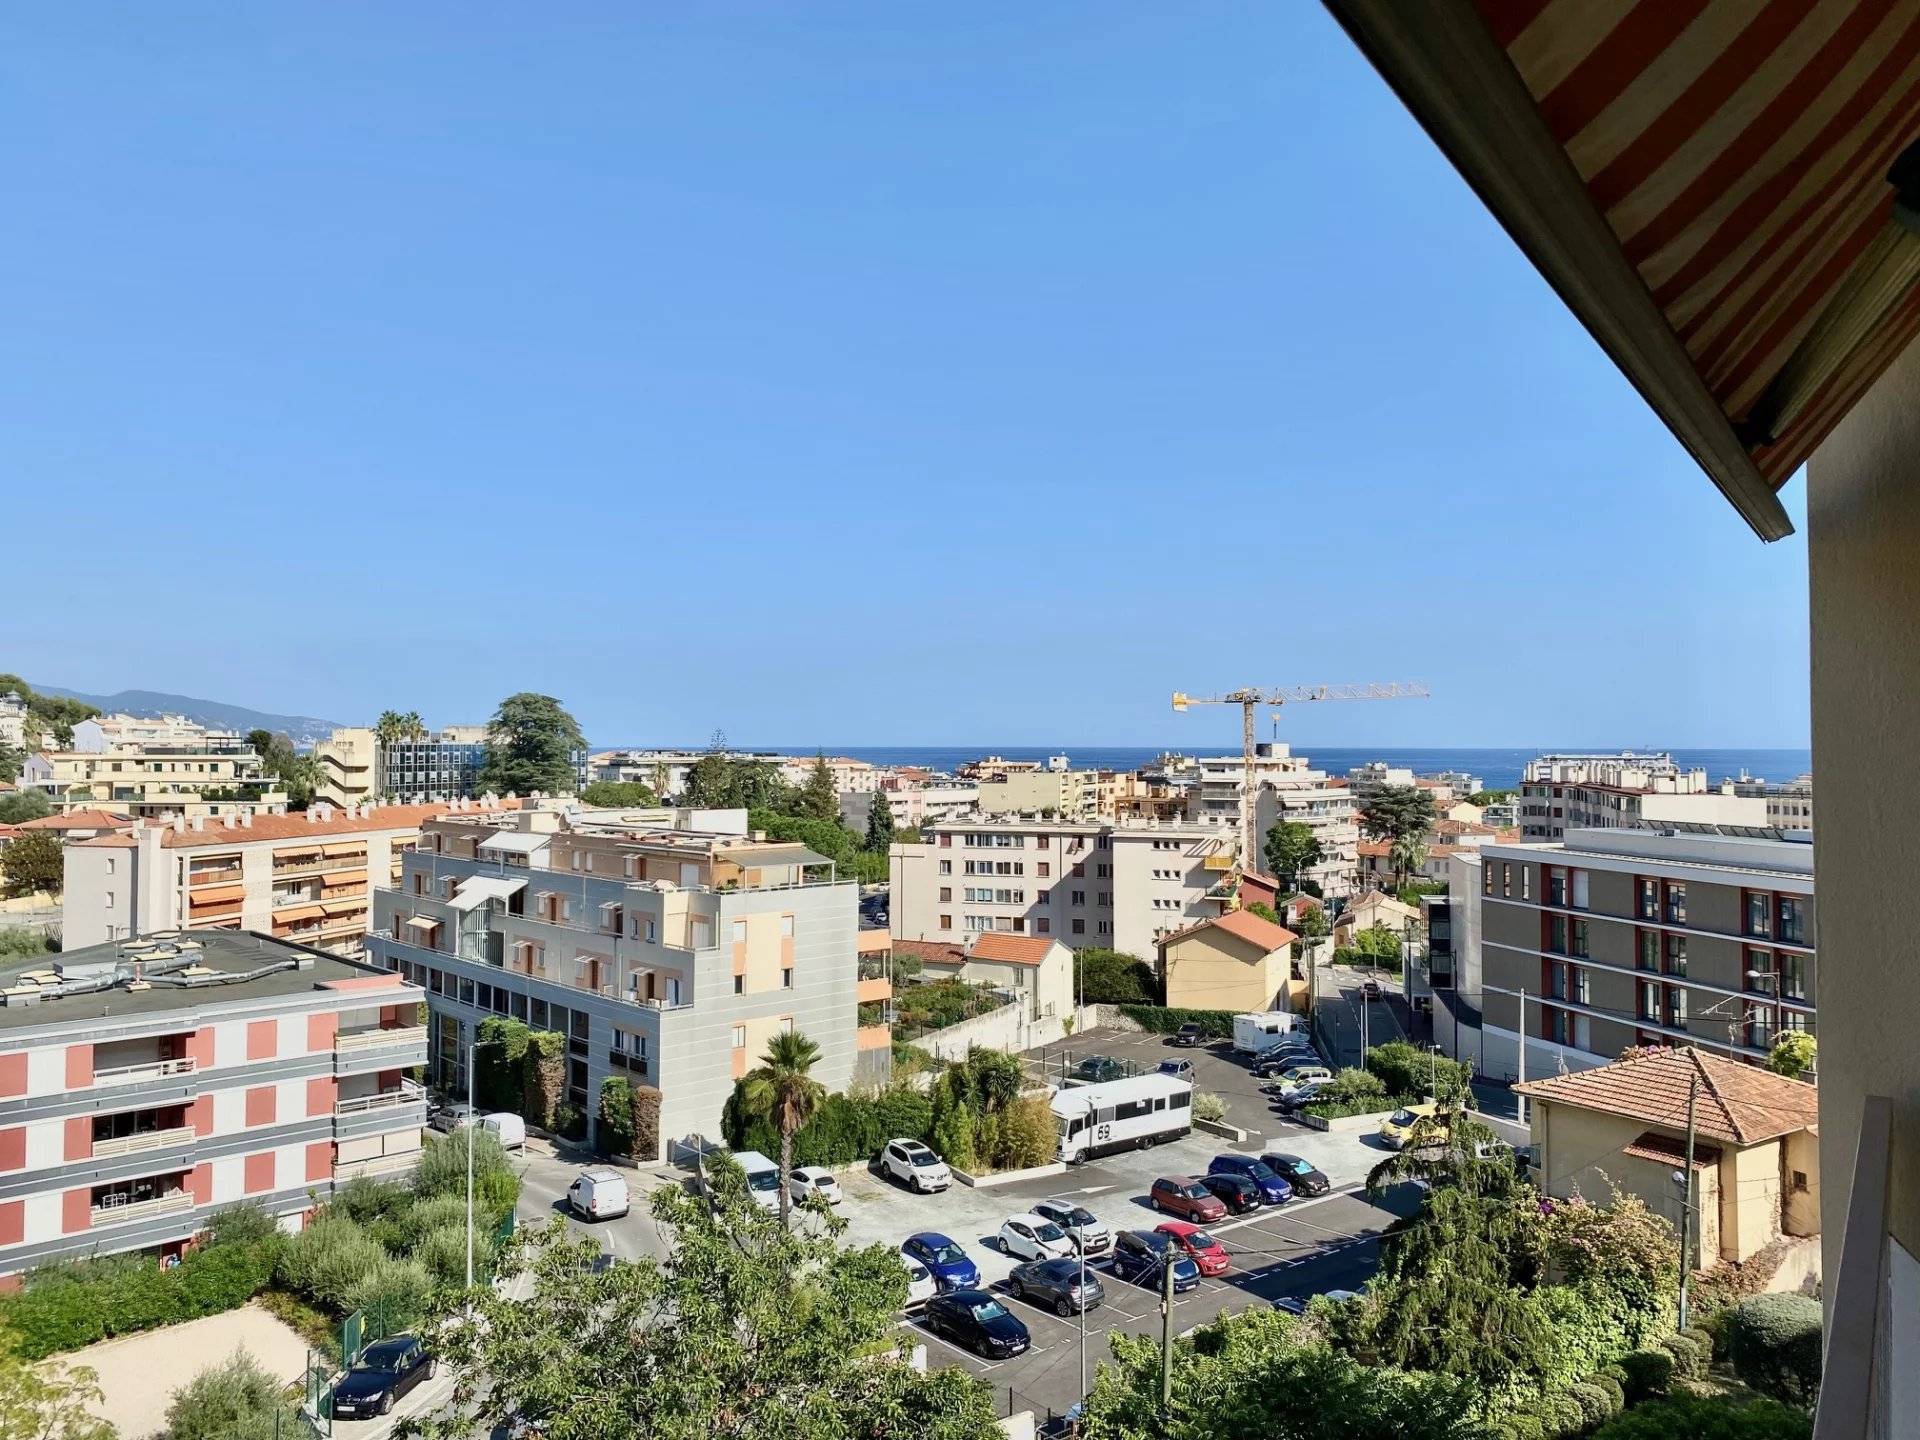 Vente Appartement 70m² 3 Pièces à Roquebrune-Cap-Martin (06190) - Sud Rivages